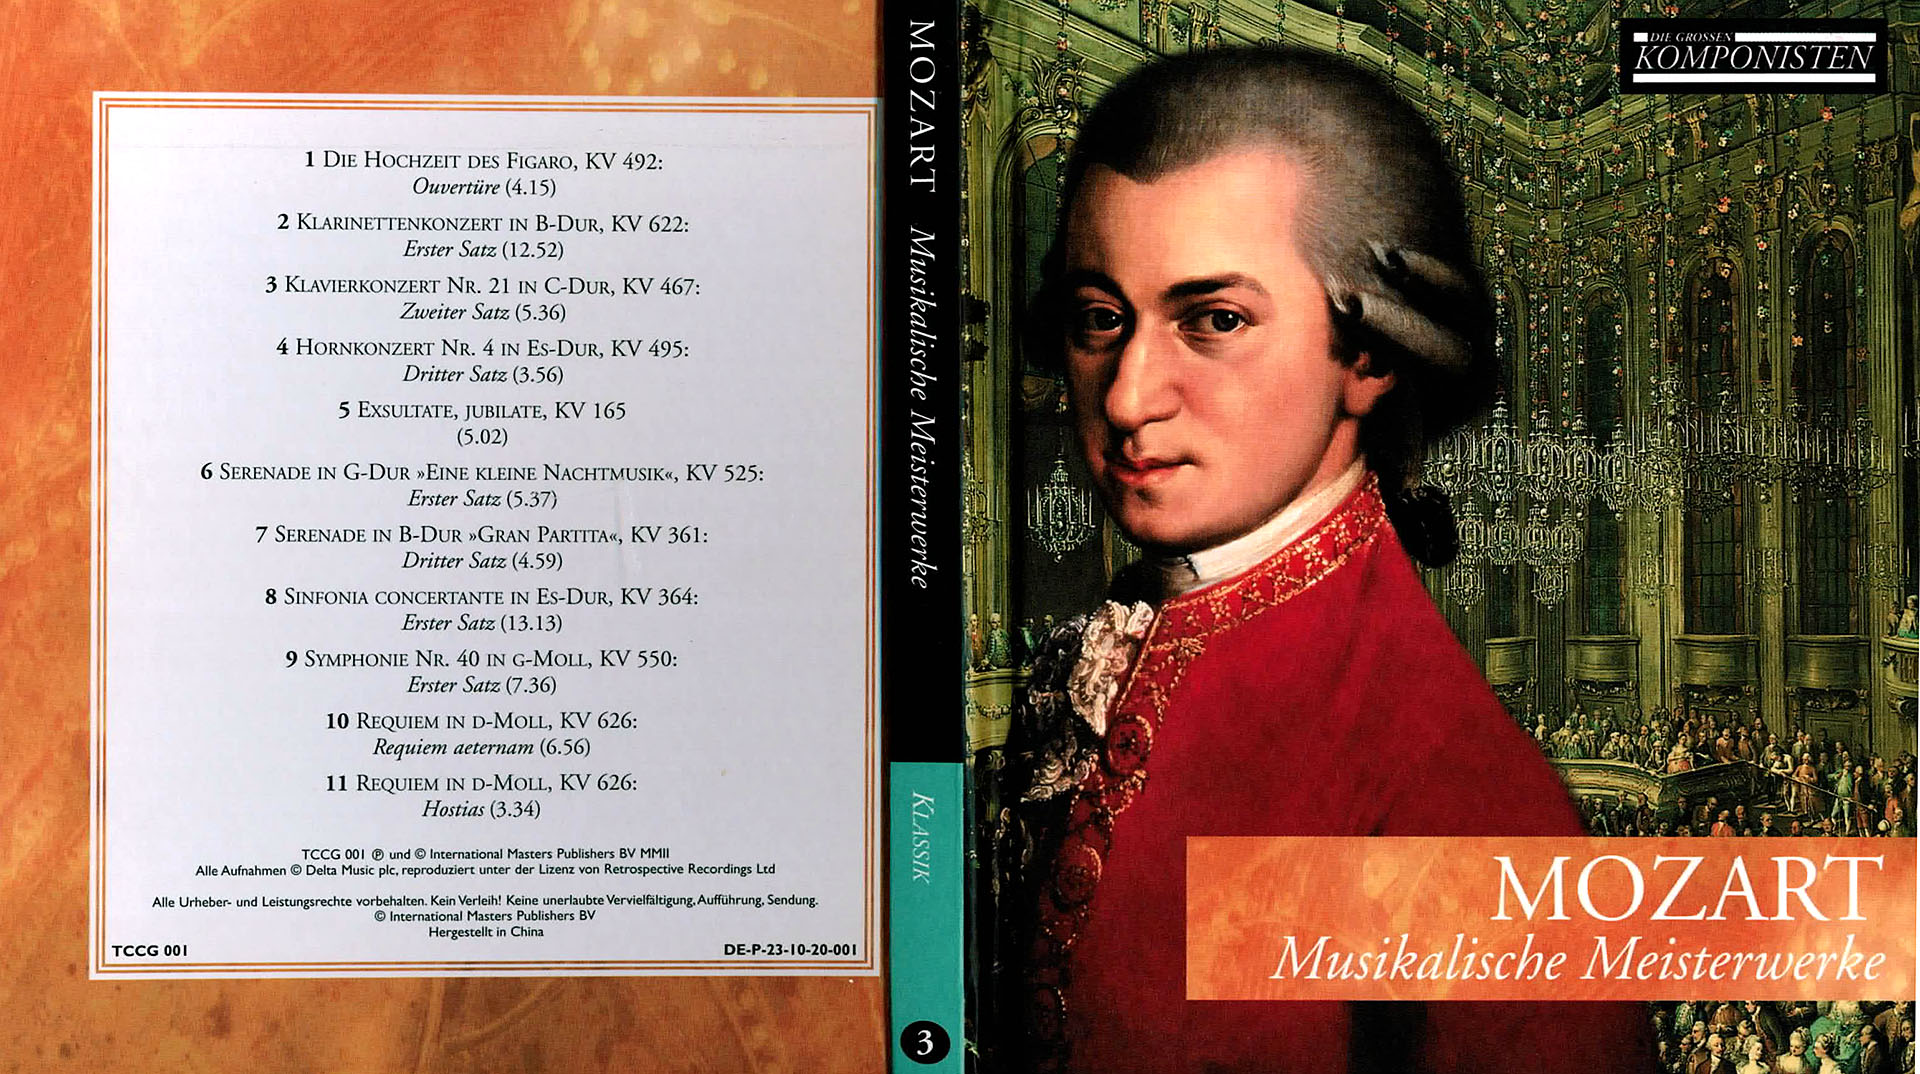 Musikalische Meisterwerke - Wolfgang Amadeus Mozart